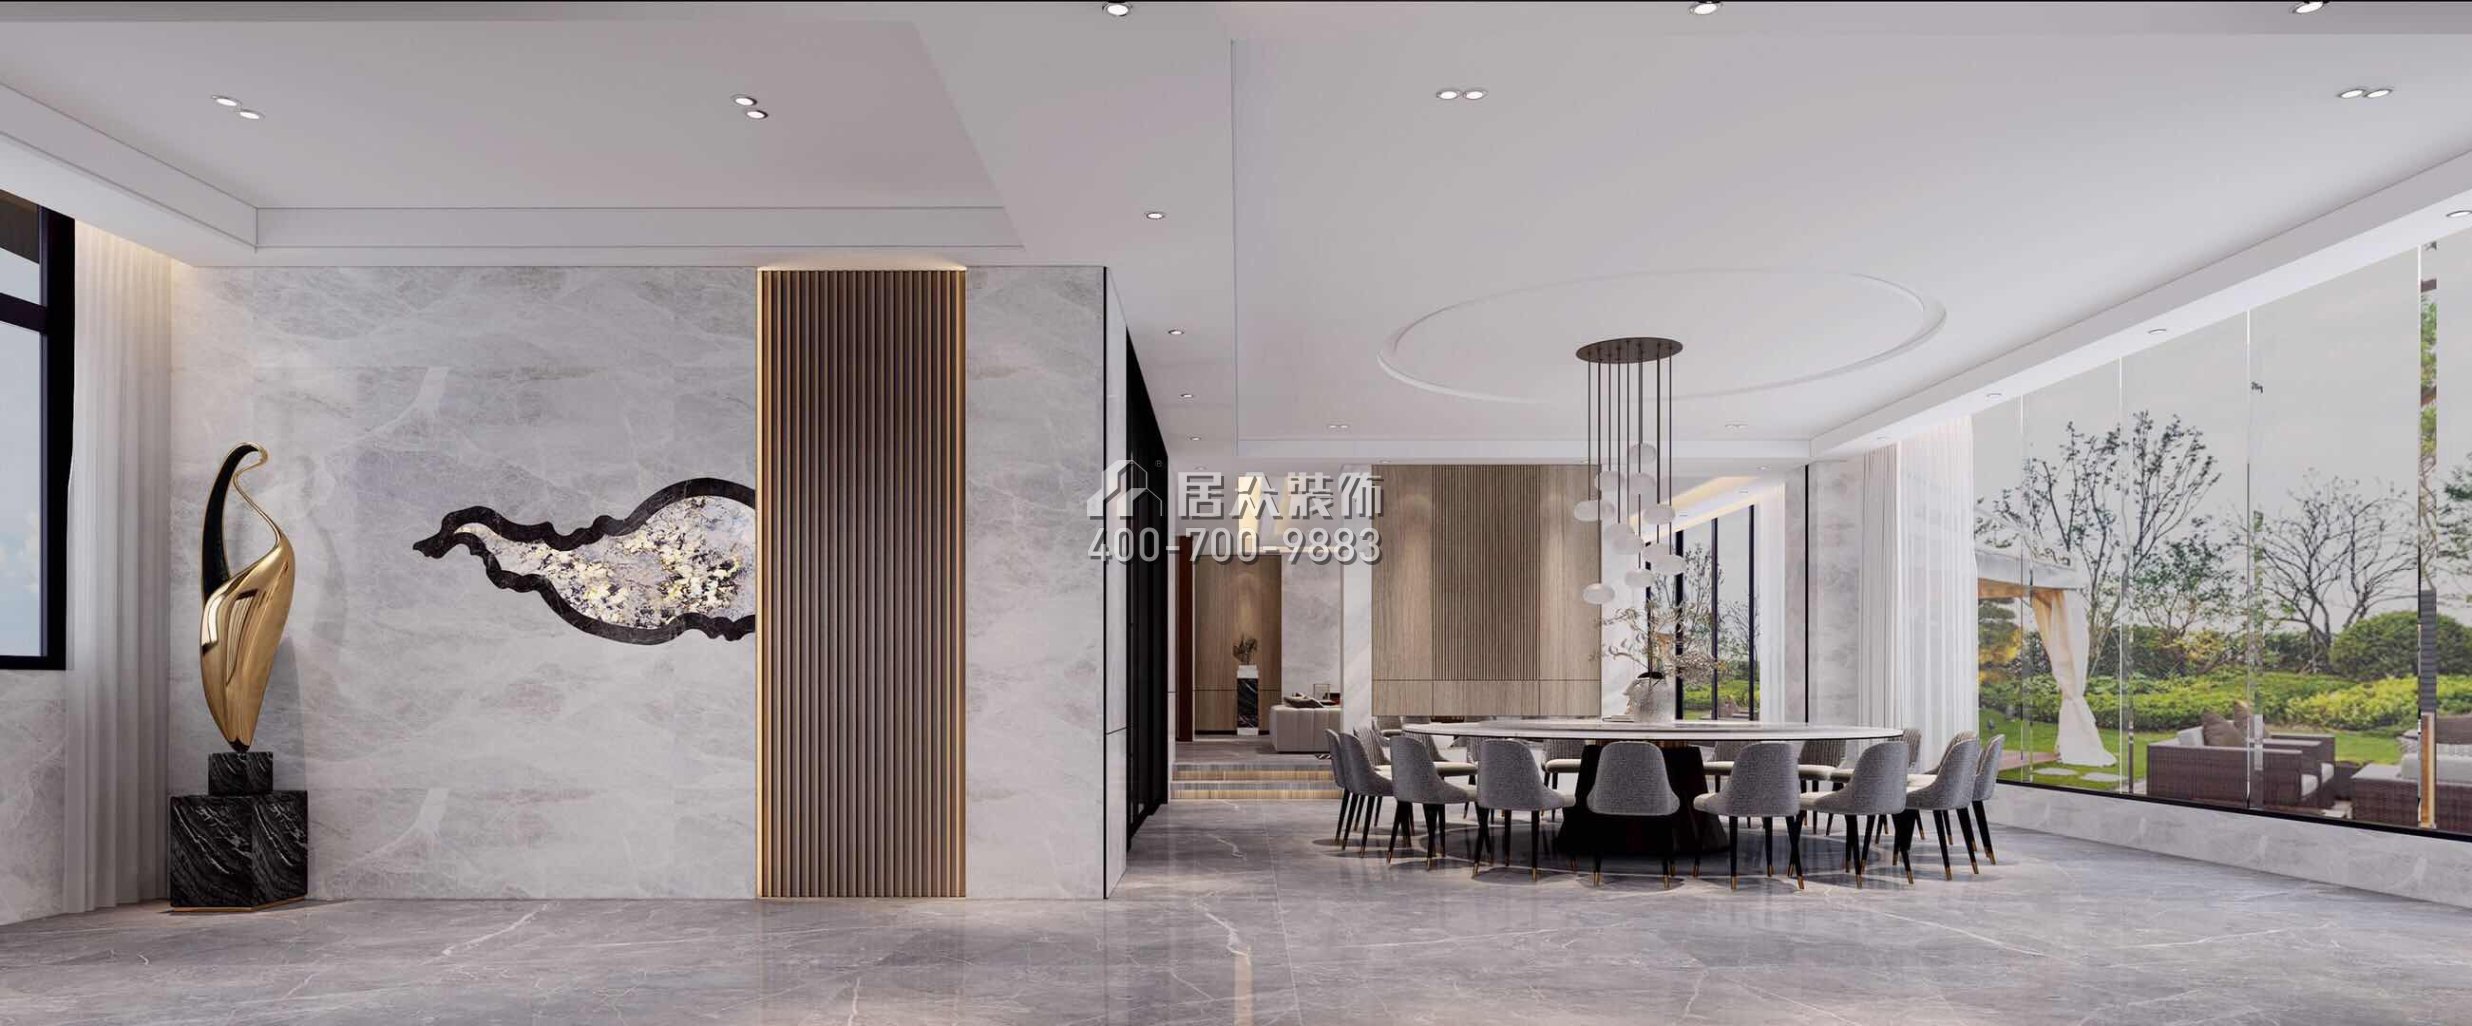 自建房300平方米現代簡約風格平層戶型餐廳裝修效果圖